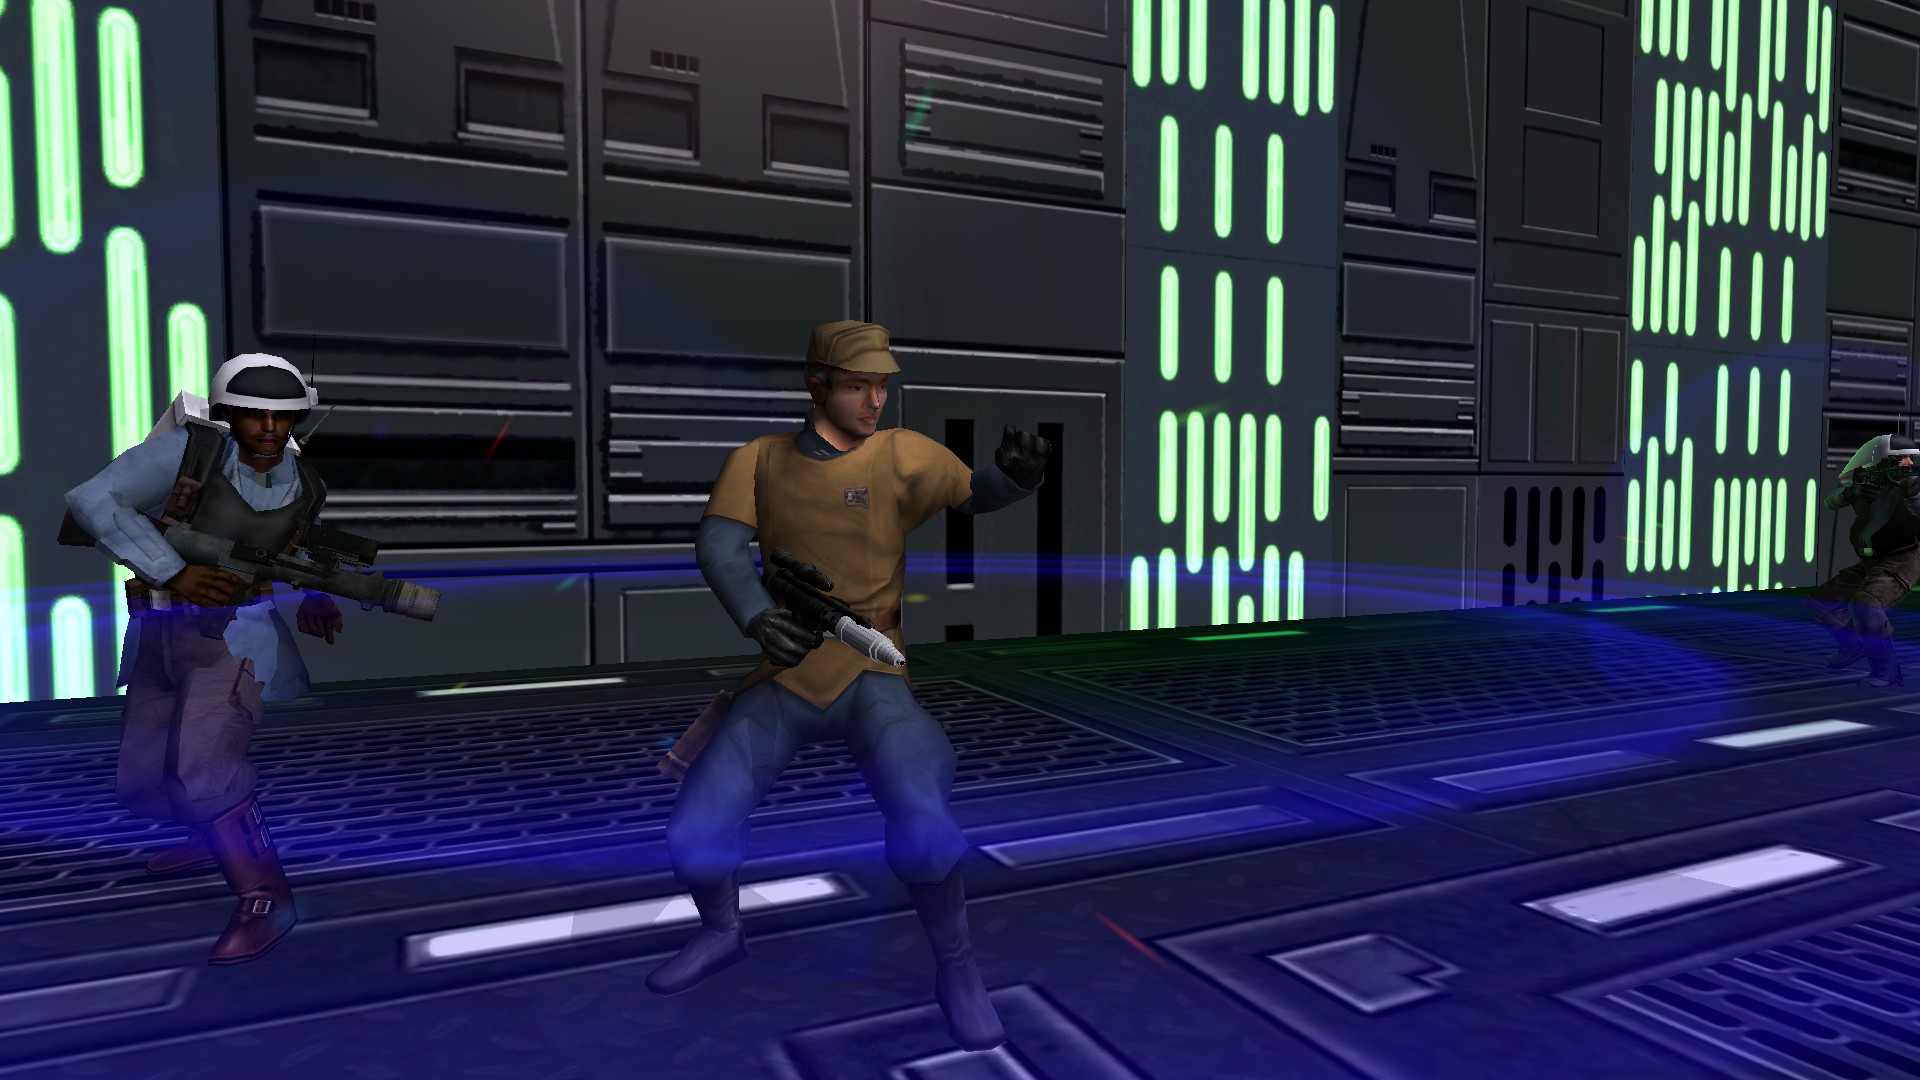 Star wars episode i jedi power. Star Wars Episode i Jedi Power Battles. Rebel Officer. Dreamcast Star Wars Jedi Power Battles screenshot.